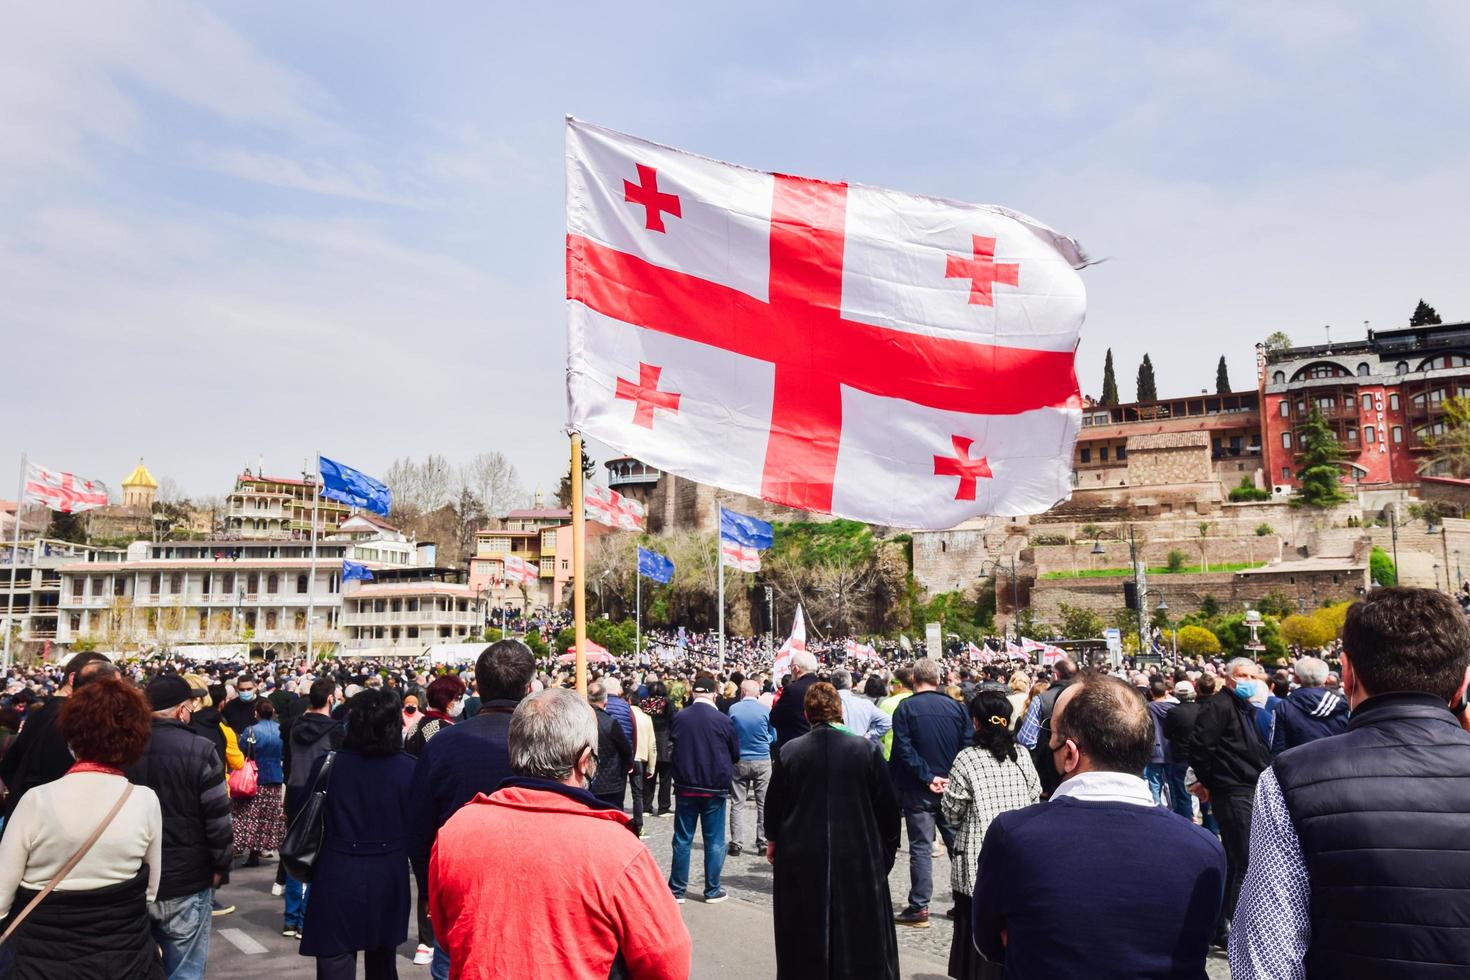 tiflis, georgien - 9. april 2021, menschen mit georgischer flagge auf der straße in friedlichem protest. foto